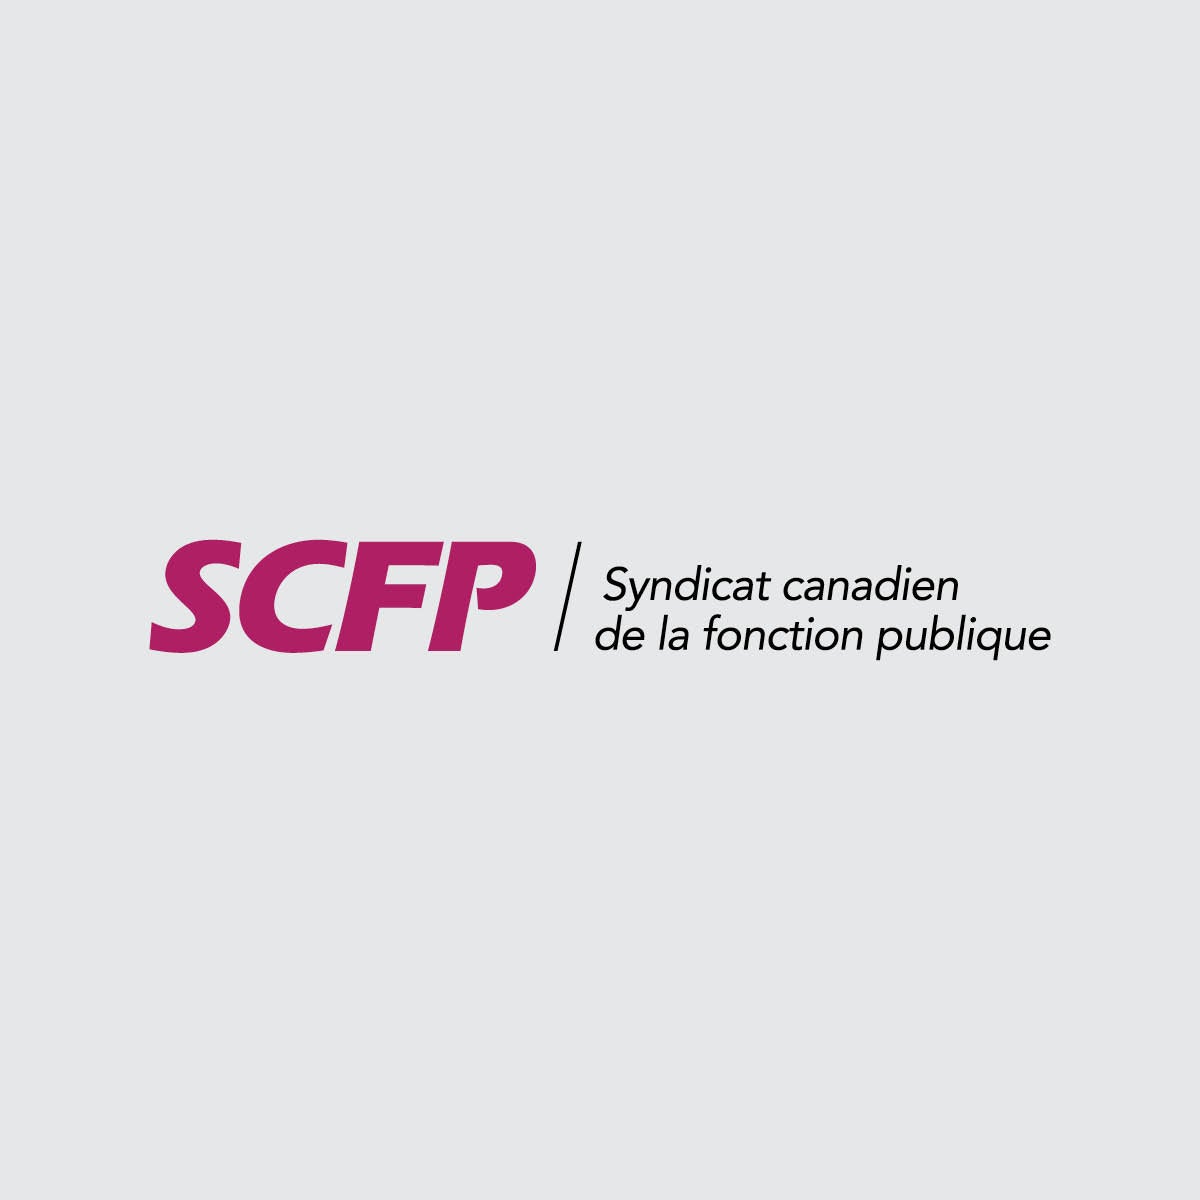 Le logo actuel du SCFP